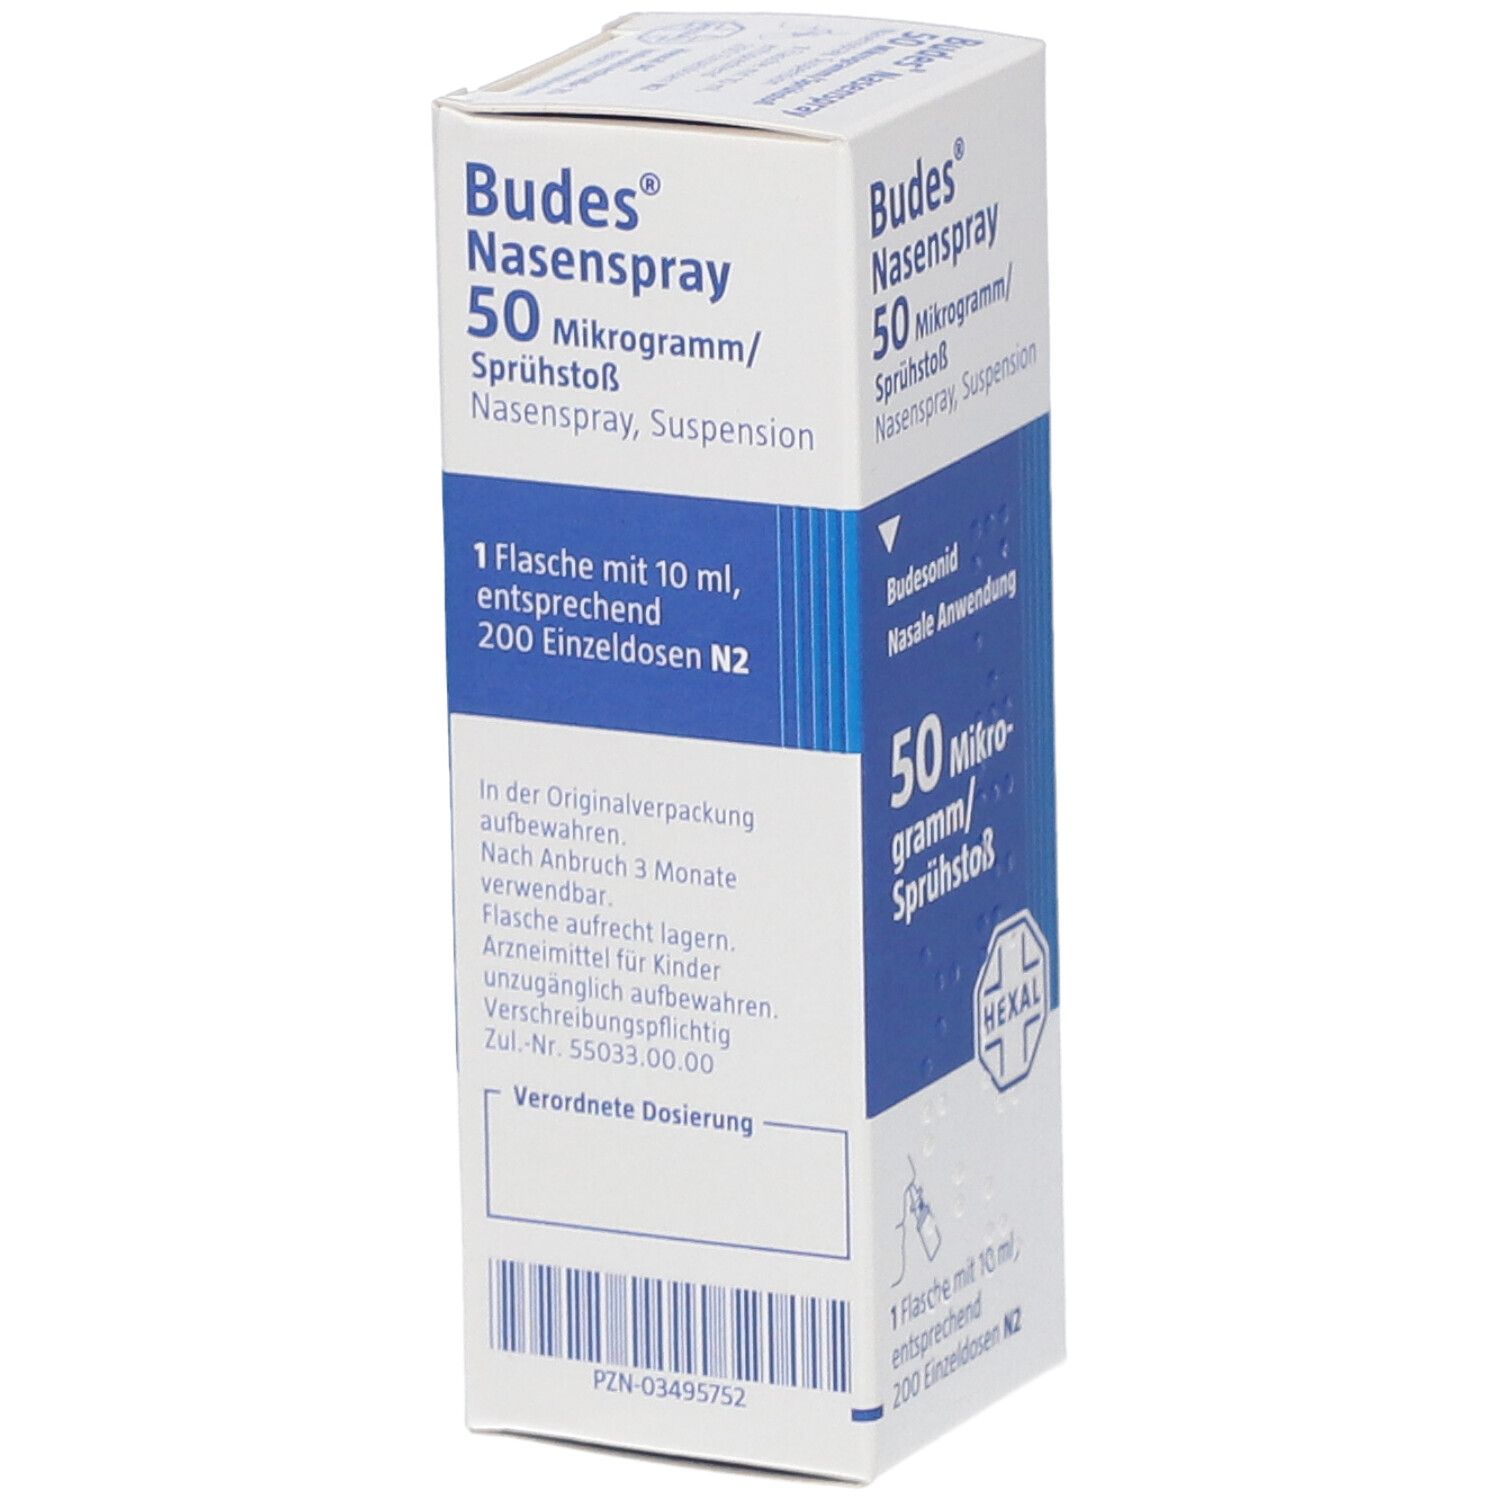 Budes® Nasenspray 50 μg/Sprühstoß